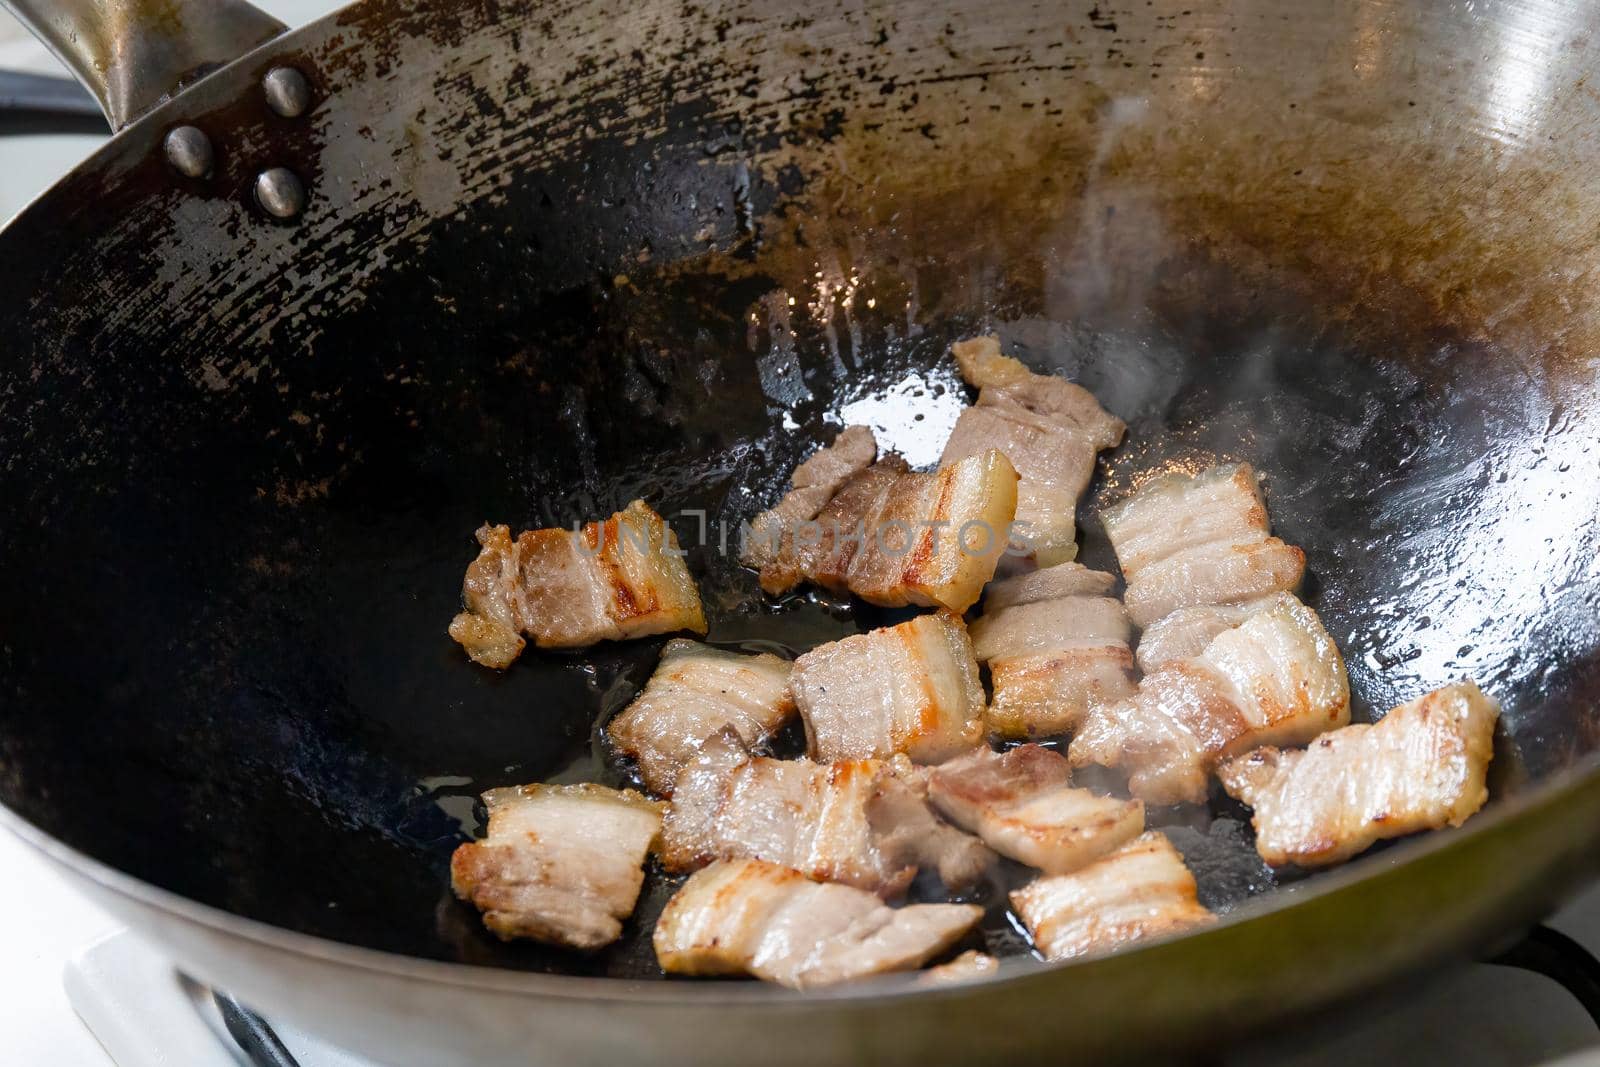 Pork belly stir fried in a wok by magicbones